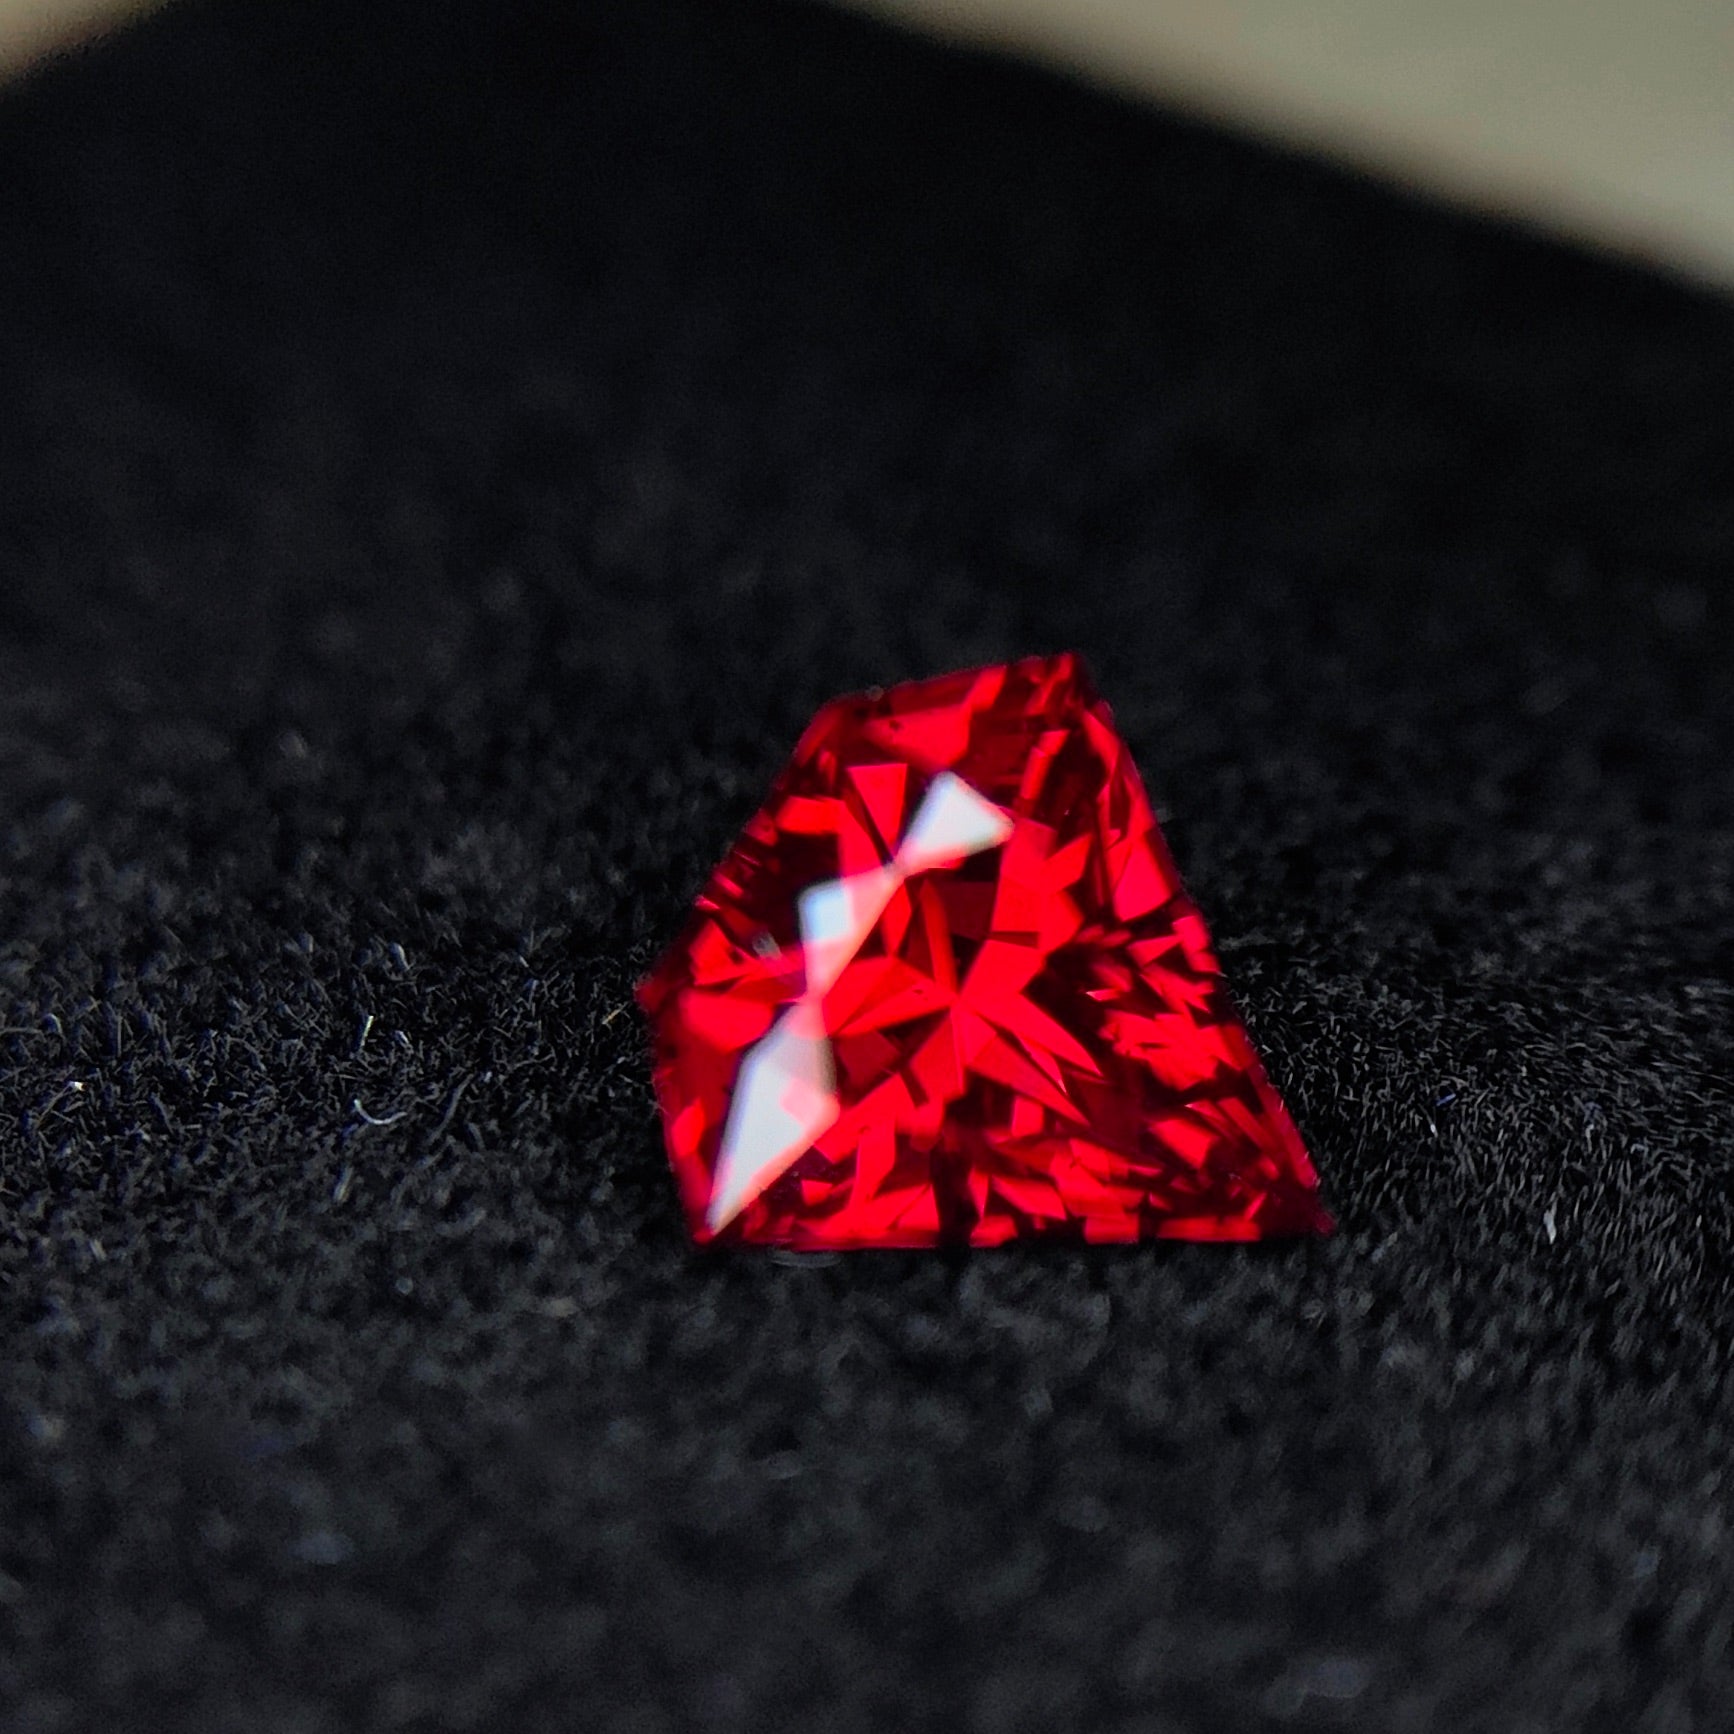 【✌️1/31 21:00終了❗️1ヶ月オークション】本色の赤と宝石形シェイプが美しすぎる赤の王様★レッドスピネル 0.736ct💎✨❗️